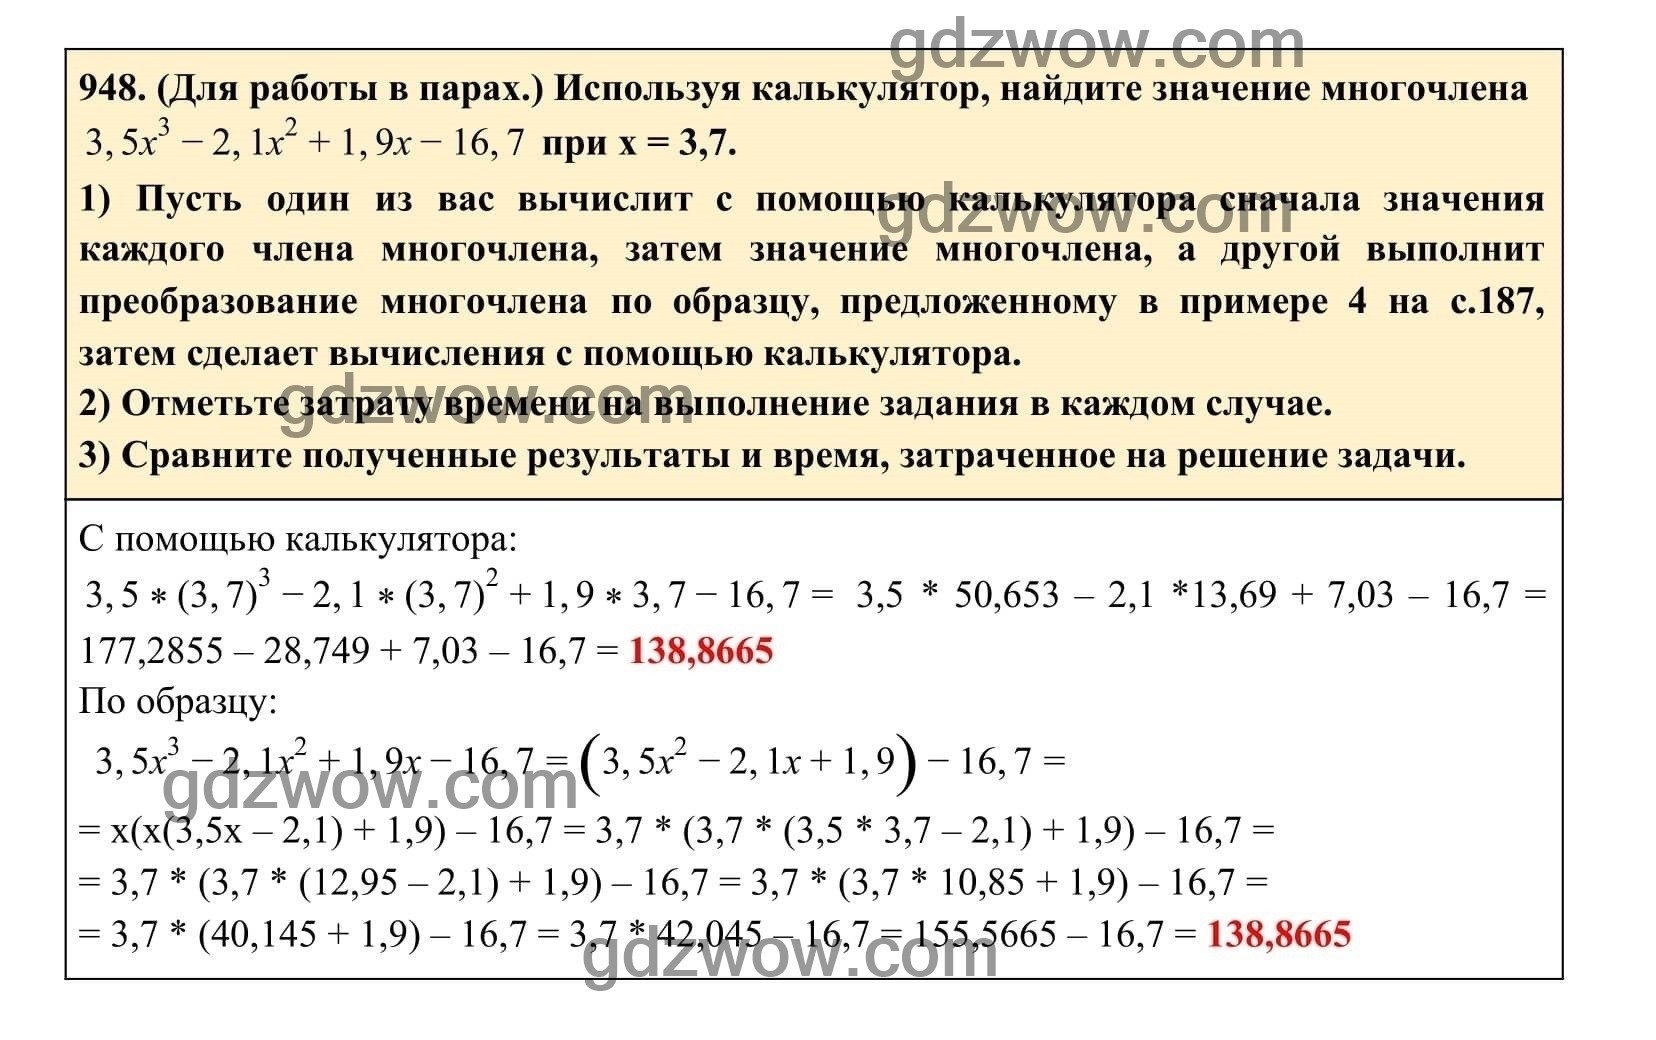 Упражнение 948 - ГДЗ по Алгебре 7 класс Учебник Макарычев (решебник) - GDZwow